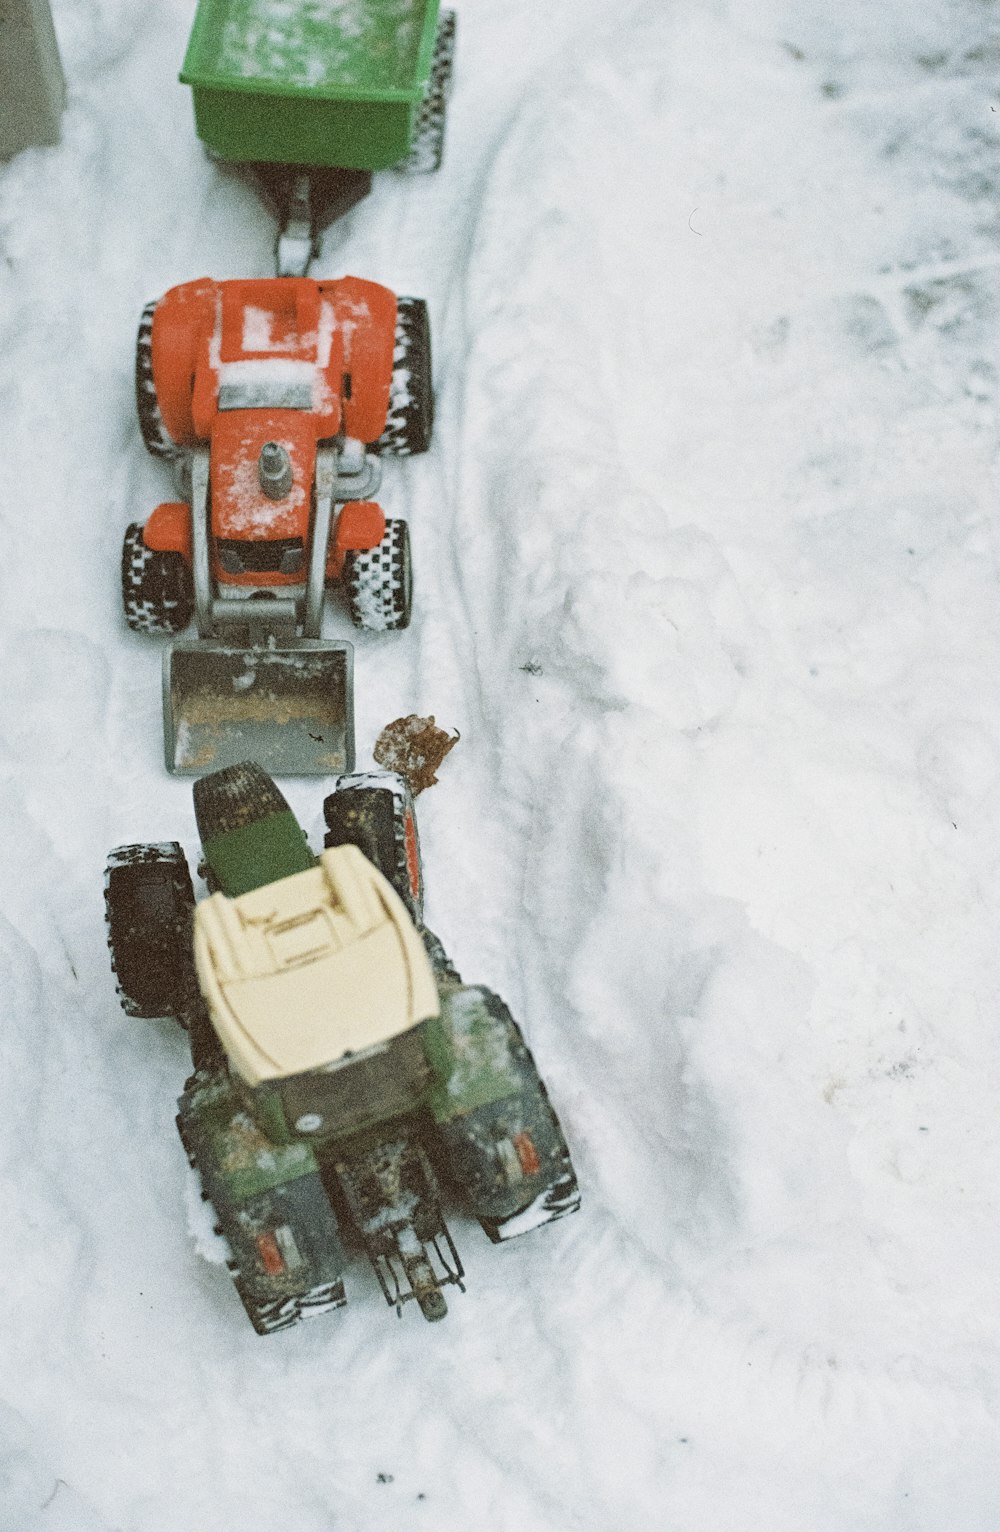 Drei rote Fahrzeugspielzeuge auf Schnee